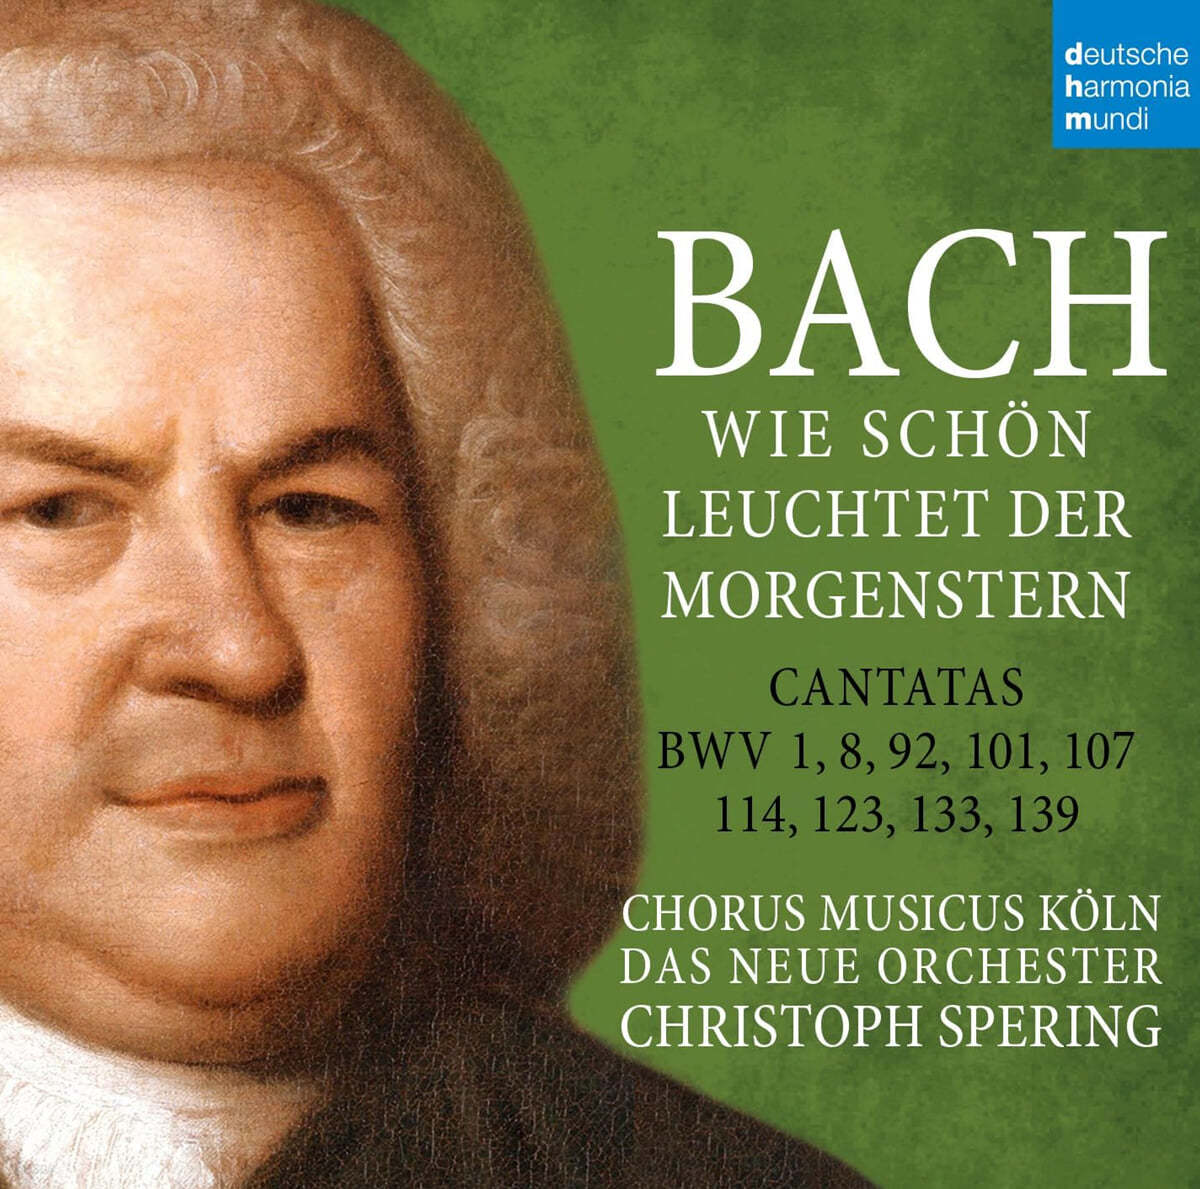 Christoph Spering 바흐: 칸타타 (Bach: Wie schön leuchtet der Morgenstern - BWV 1,8,92,101,107,114,123,133,139)